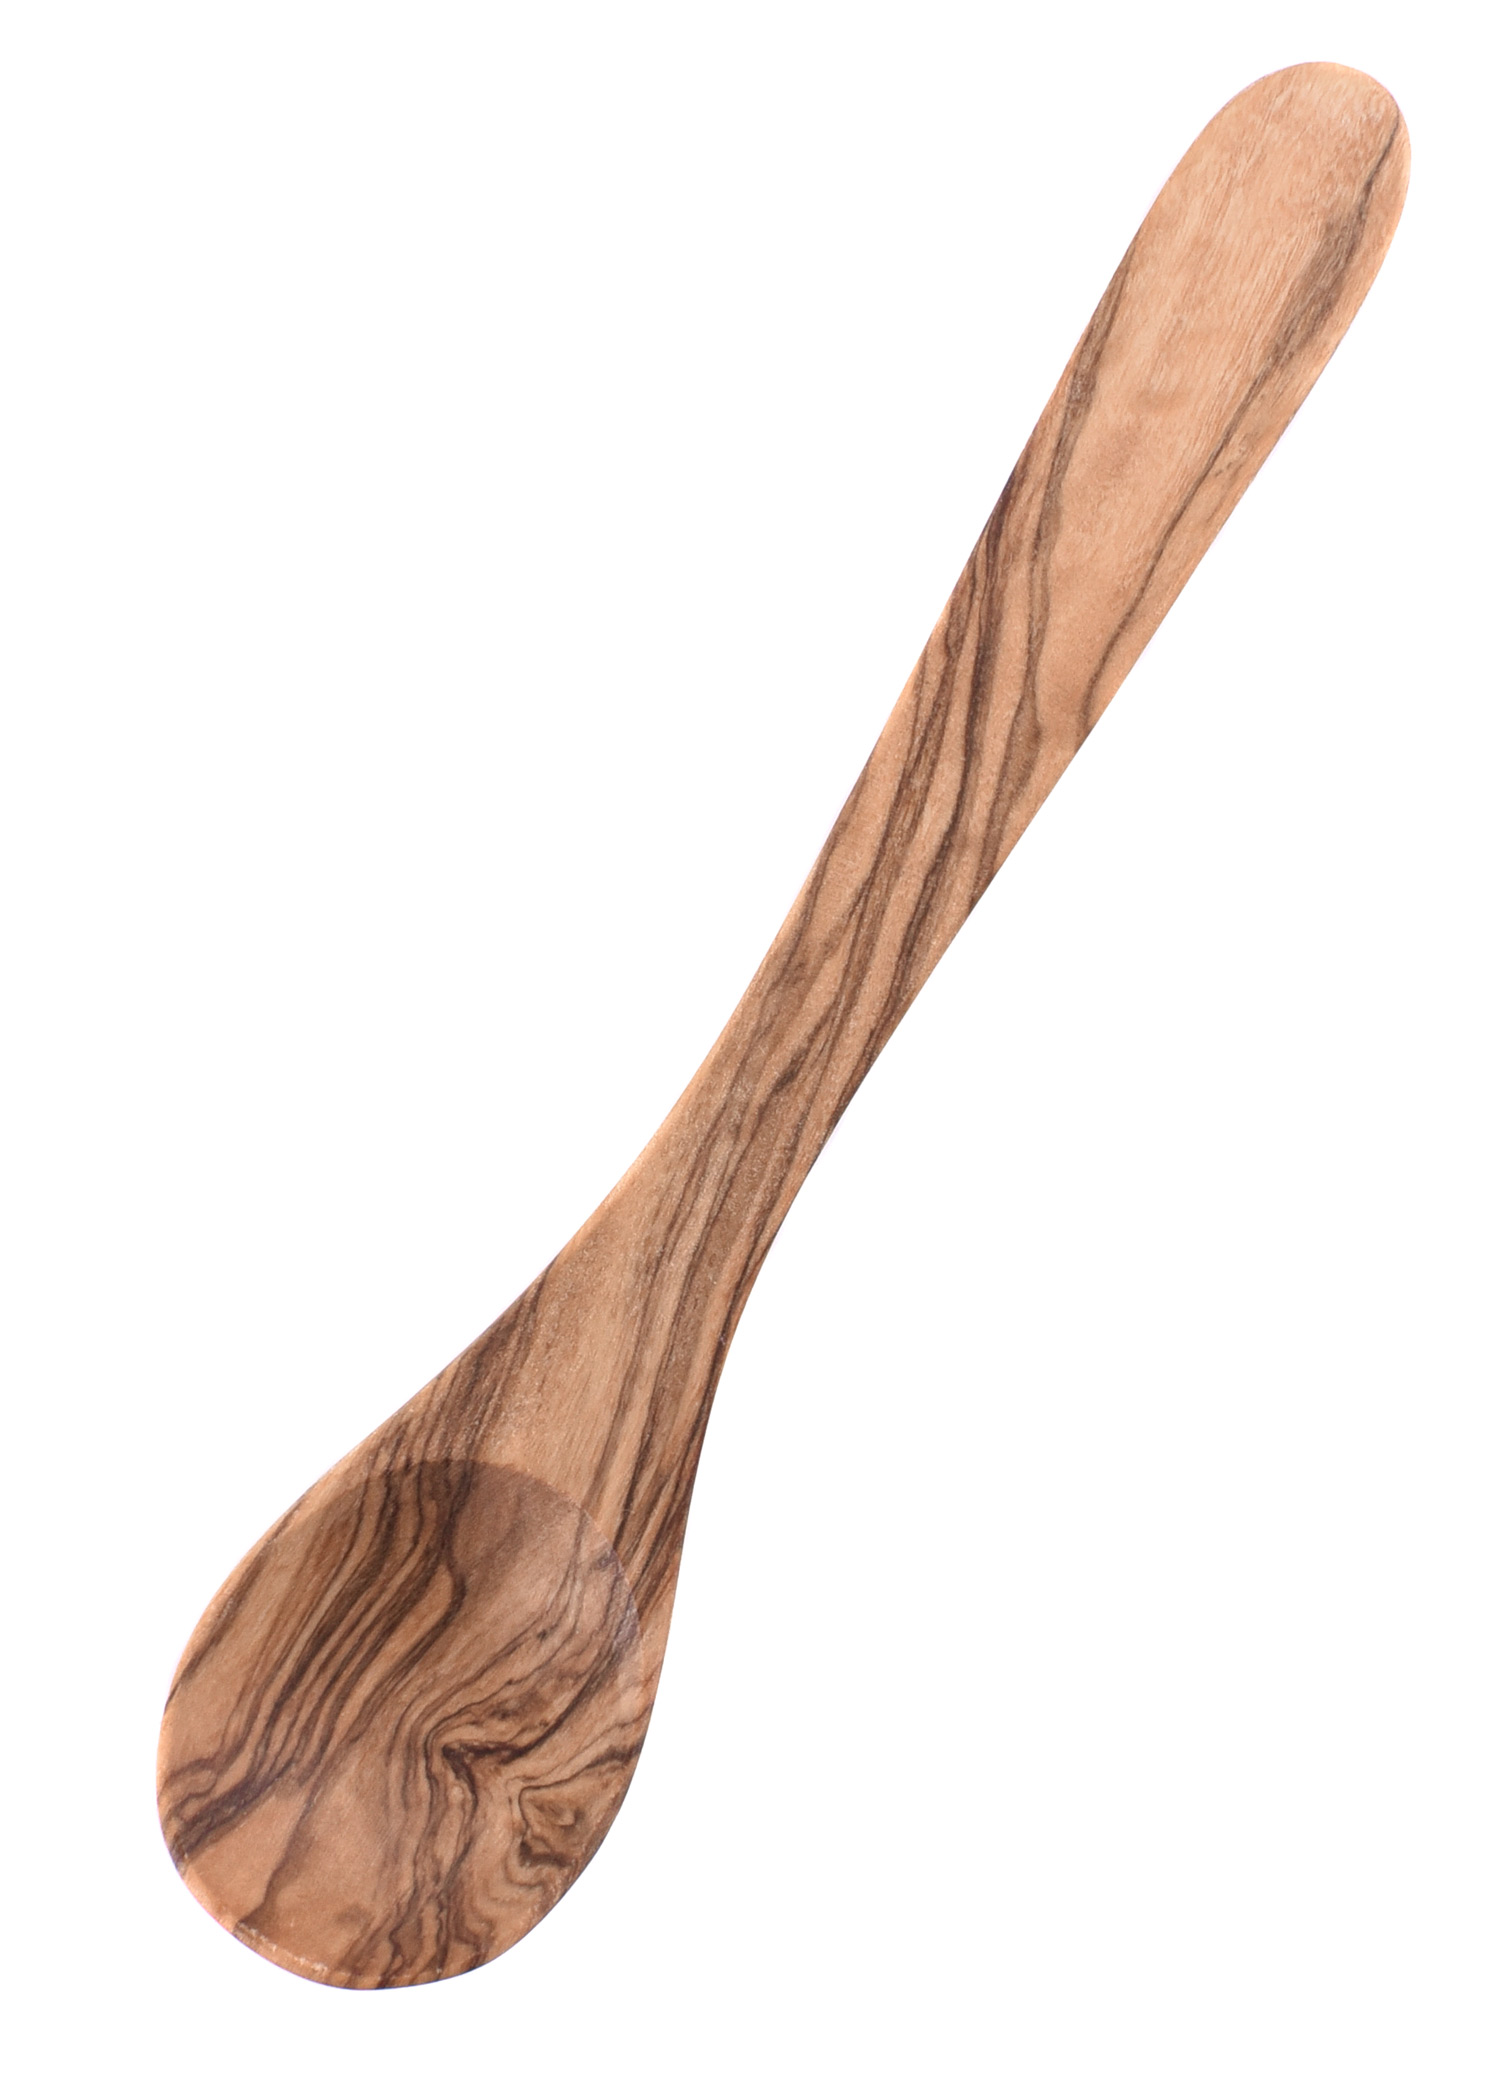 Cucchiaio piccolo in legno d'ulivo circa 13 cm